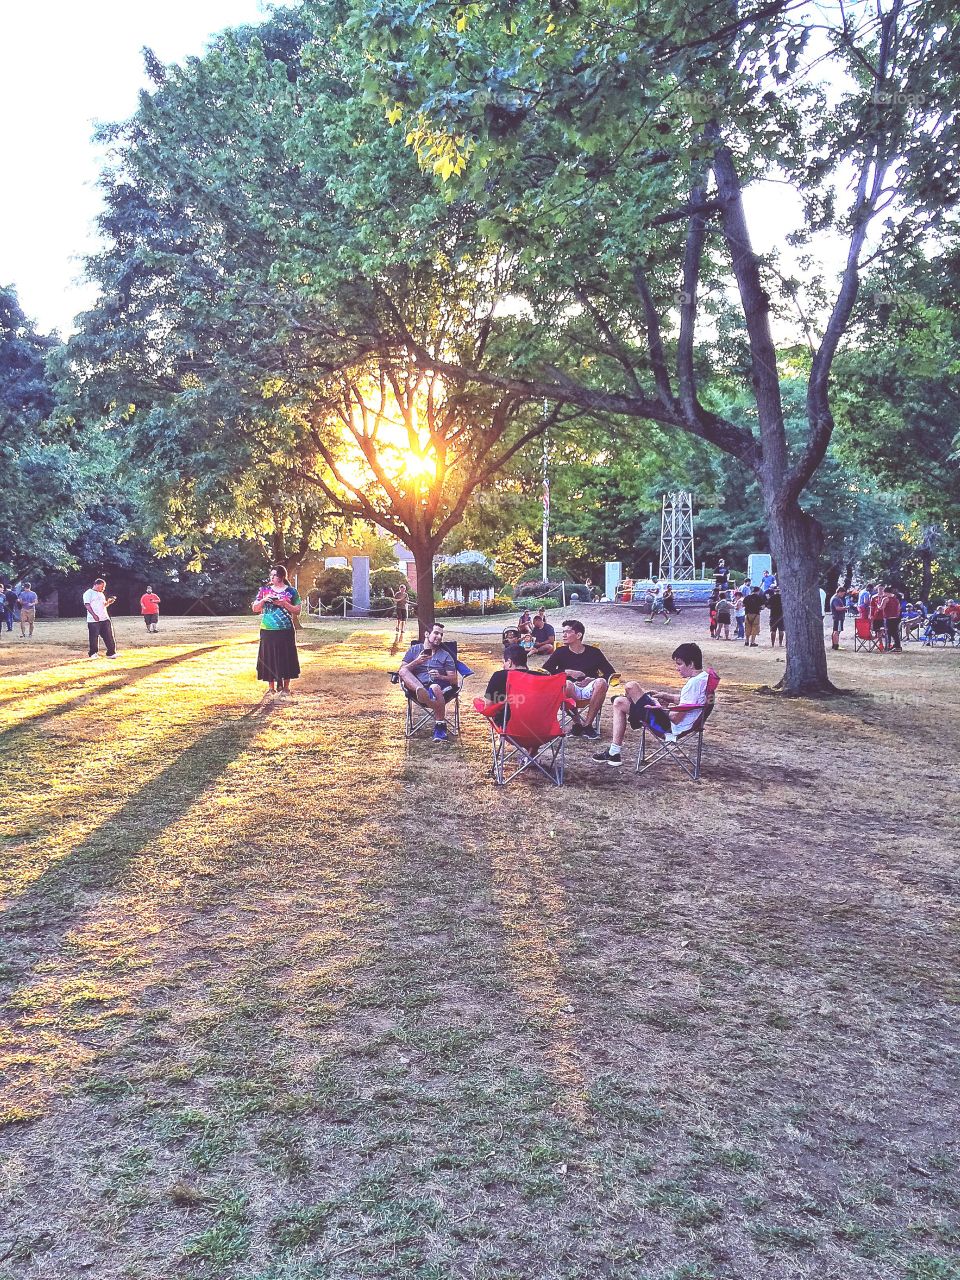 People enjoying at park